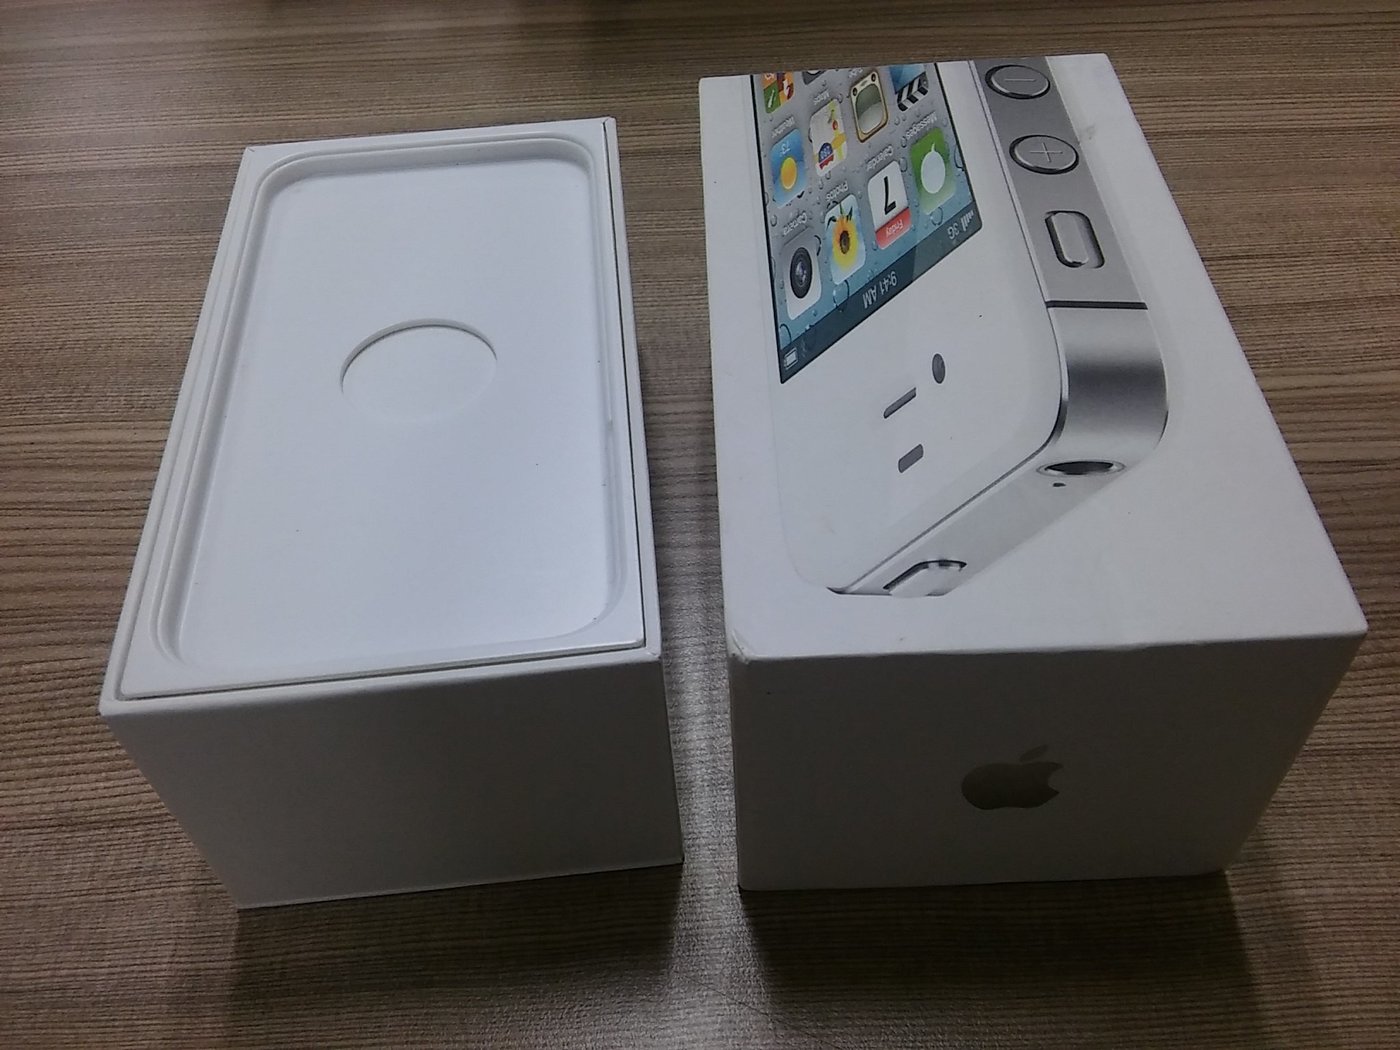 蘋果Apple iphone 4S white 16GB 白色包裝盒(只有包材& 蘋果貼紙